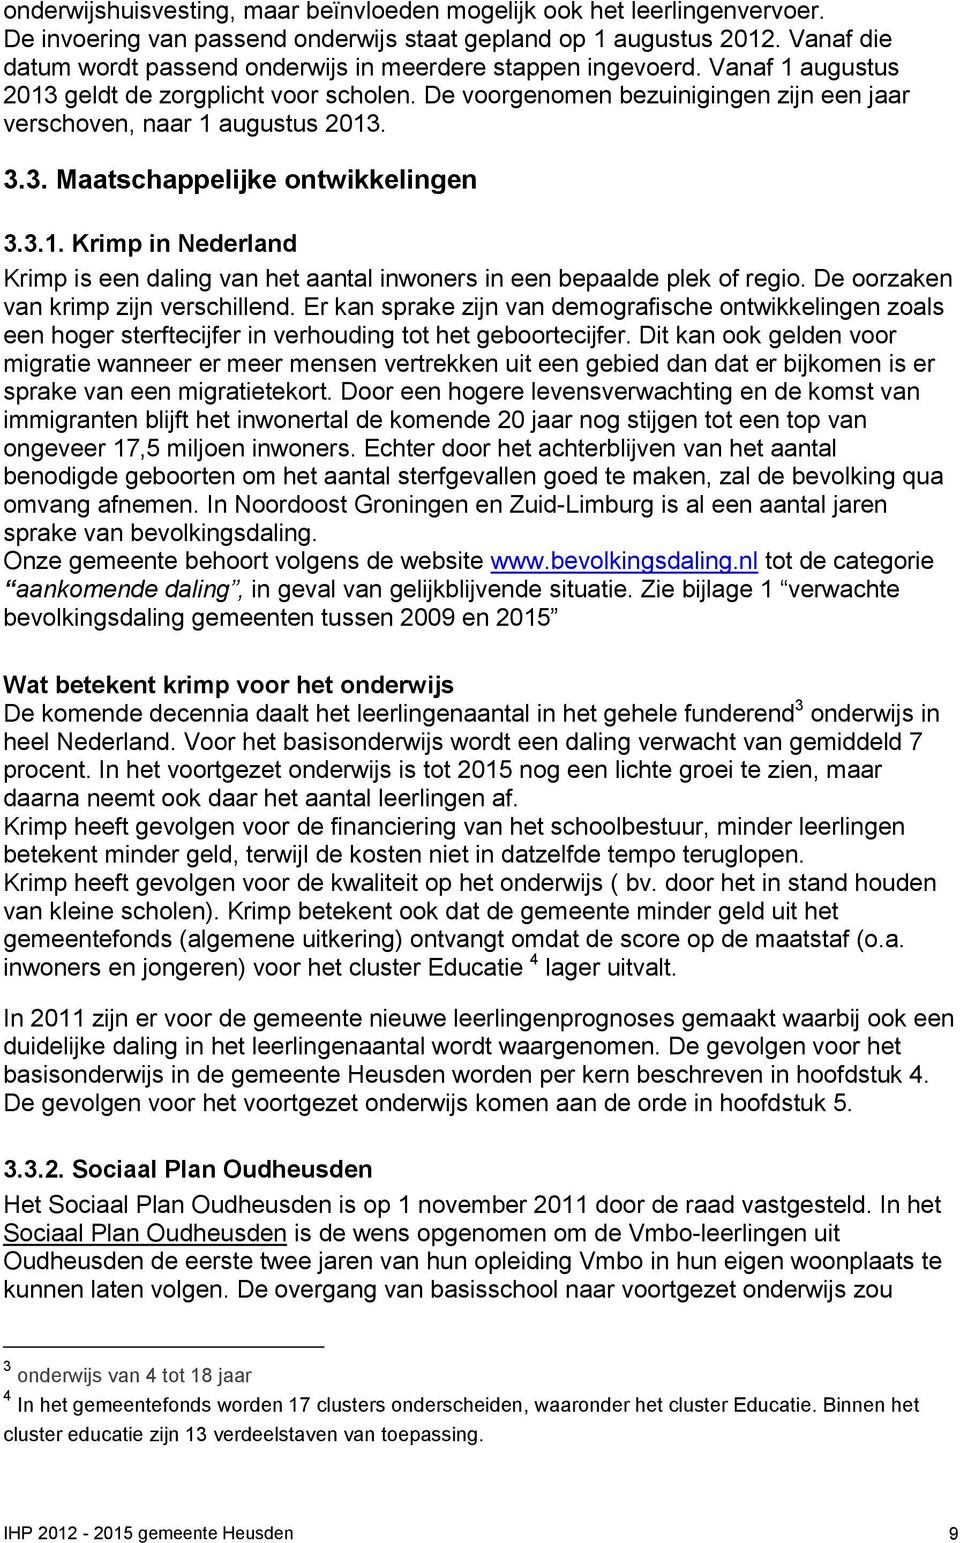 De voorgenomen bezuinigingen zijn een jaar verschoven, naar 1 augustus 2013. 3.3. Maatschappelijke ontwikkelingen 3.3.1. Krimp in Nederland Krimp is een daling van het aantal inwoners in een bepaalde plek of regio.